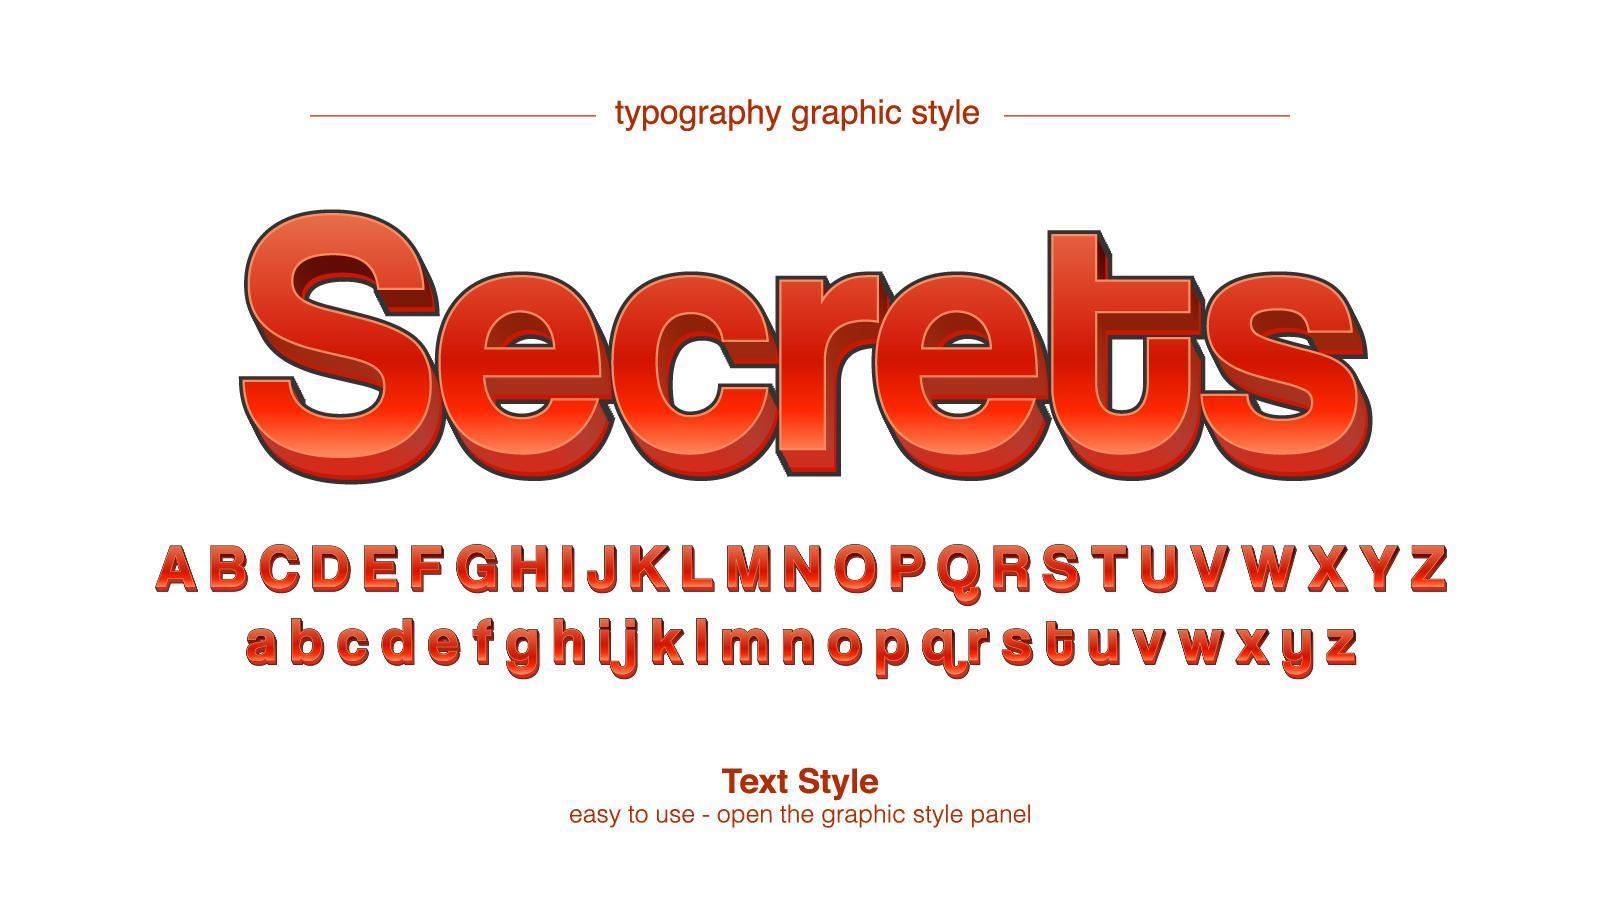 rode 3d sans serif cartooneske display typografie vector